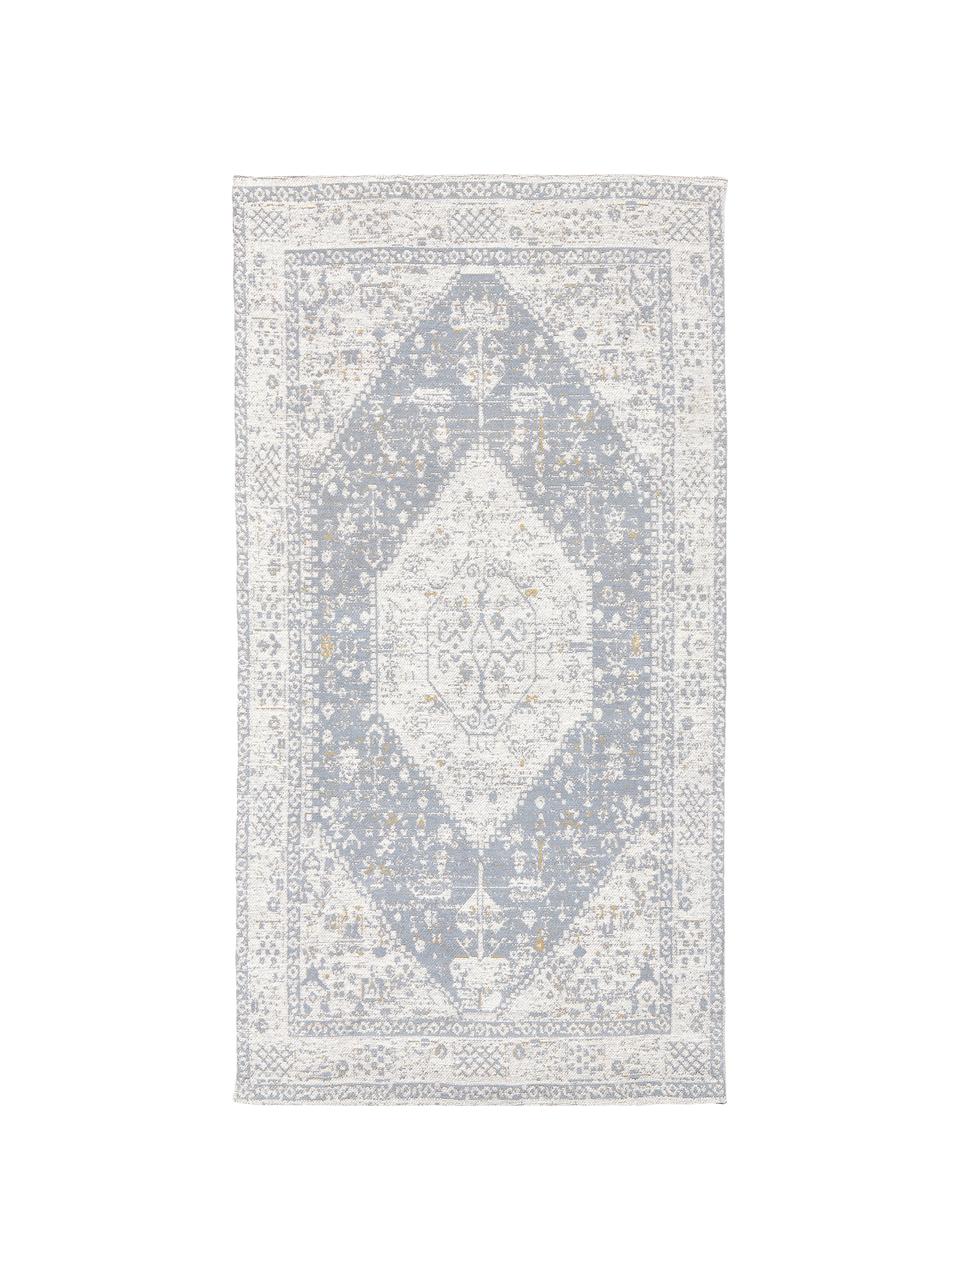 Ręcznie tkany dywan szenilowy Neapel, Szaroniebieski, kremowobiały, taupe, S 300 x D 400 cm (Rozmiar XL)